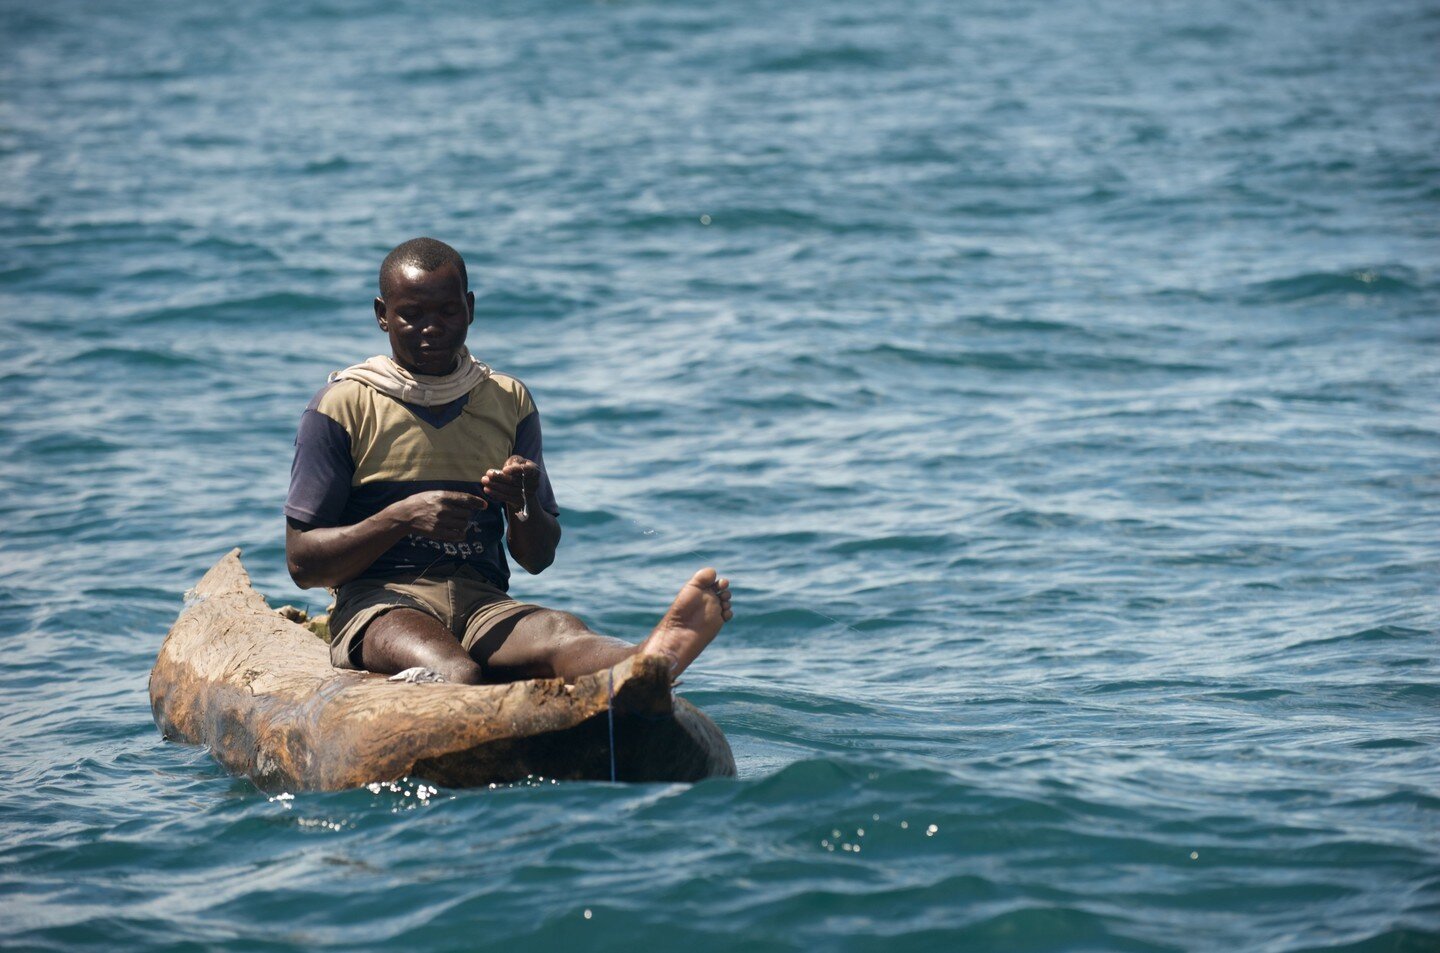 Fishing on Lake Malawi

📍 Malawi
📸 Patrick Dugan

#lakemalawi #malawi #fishing #fisherman